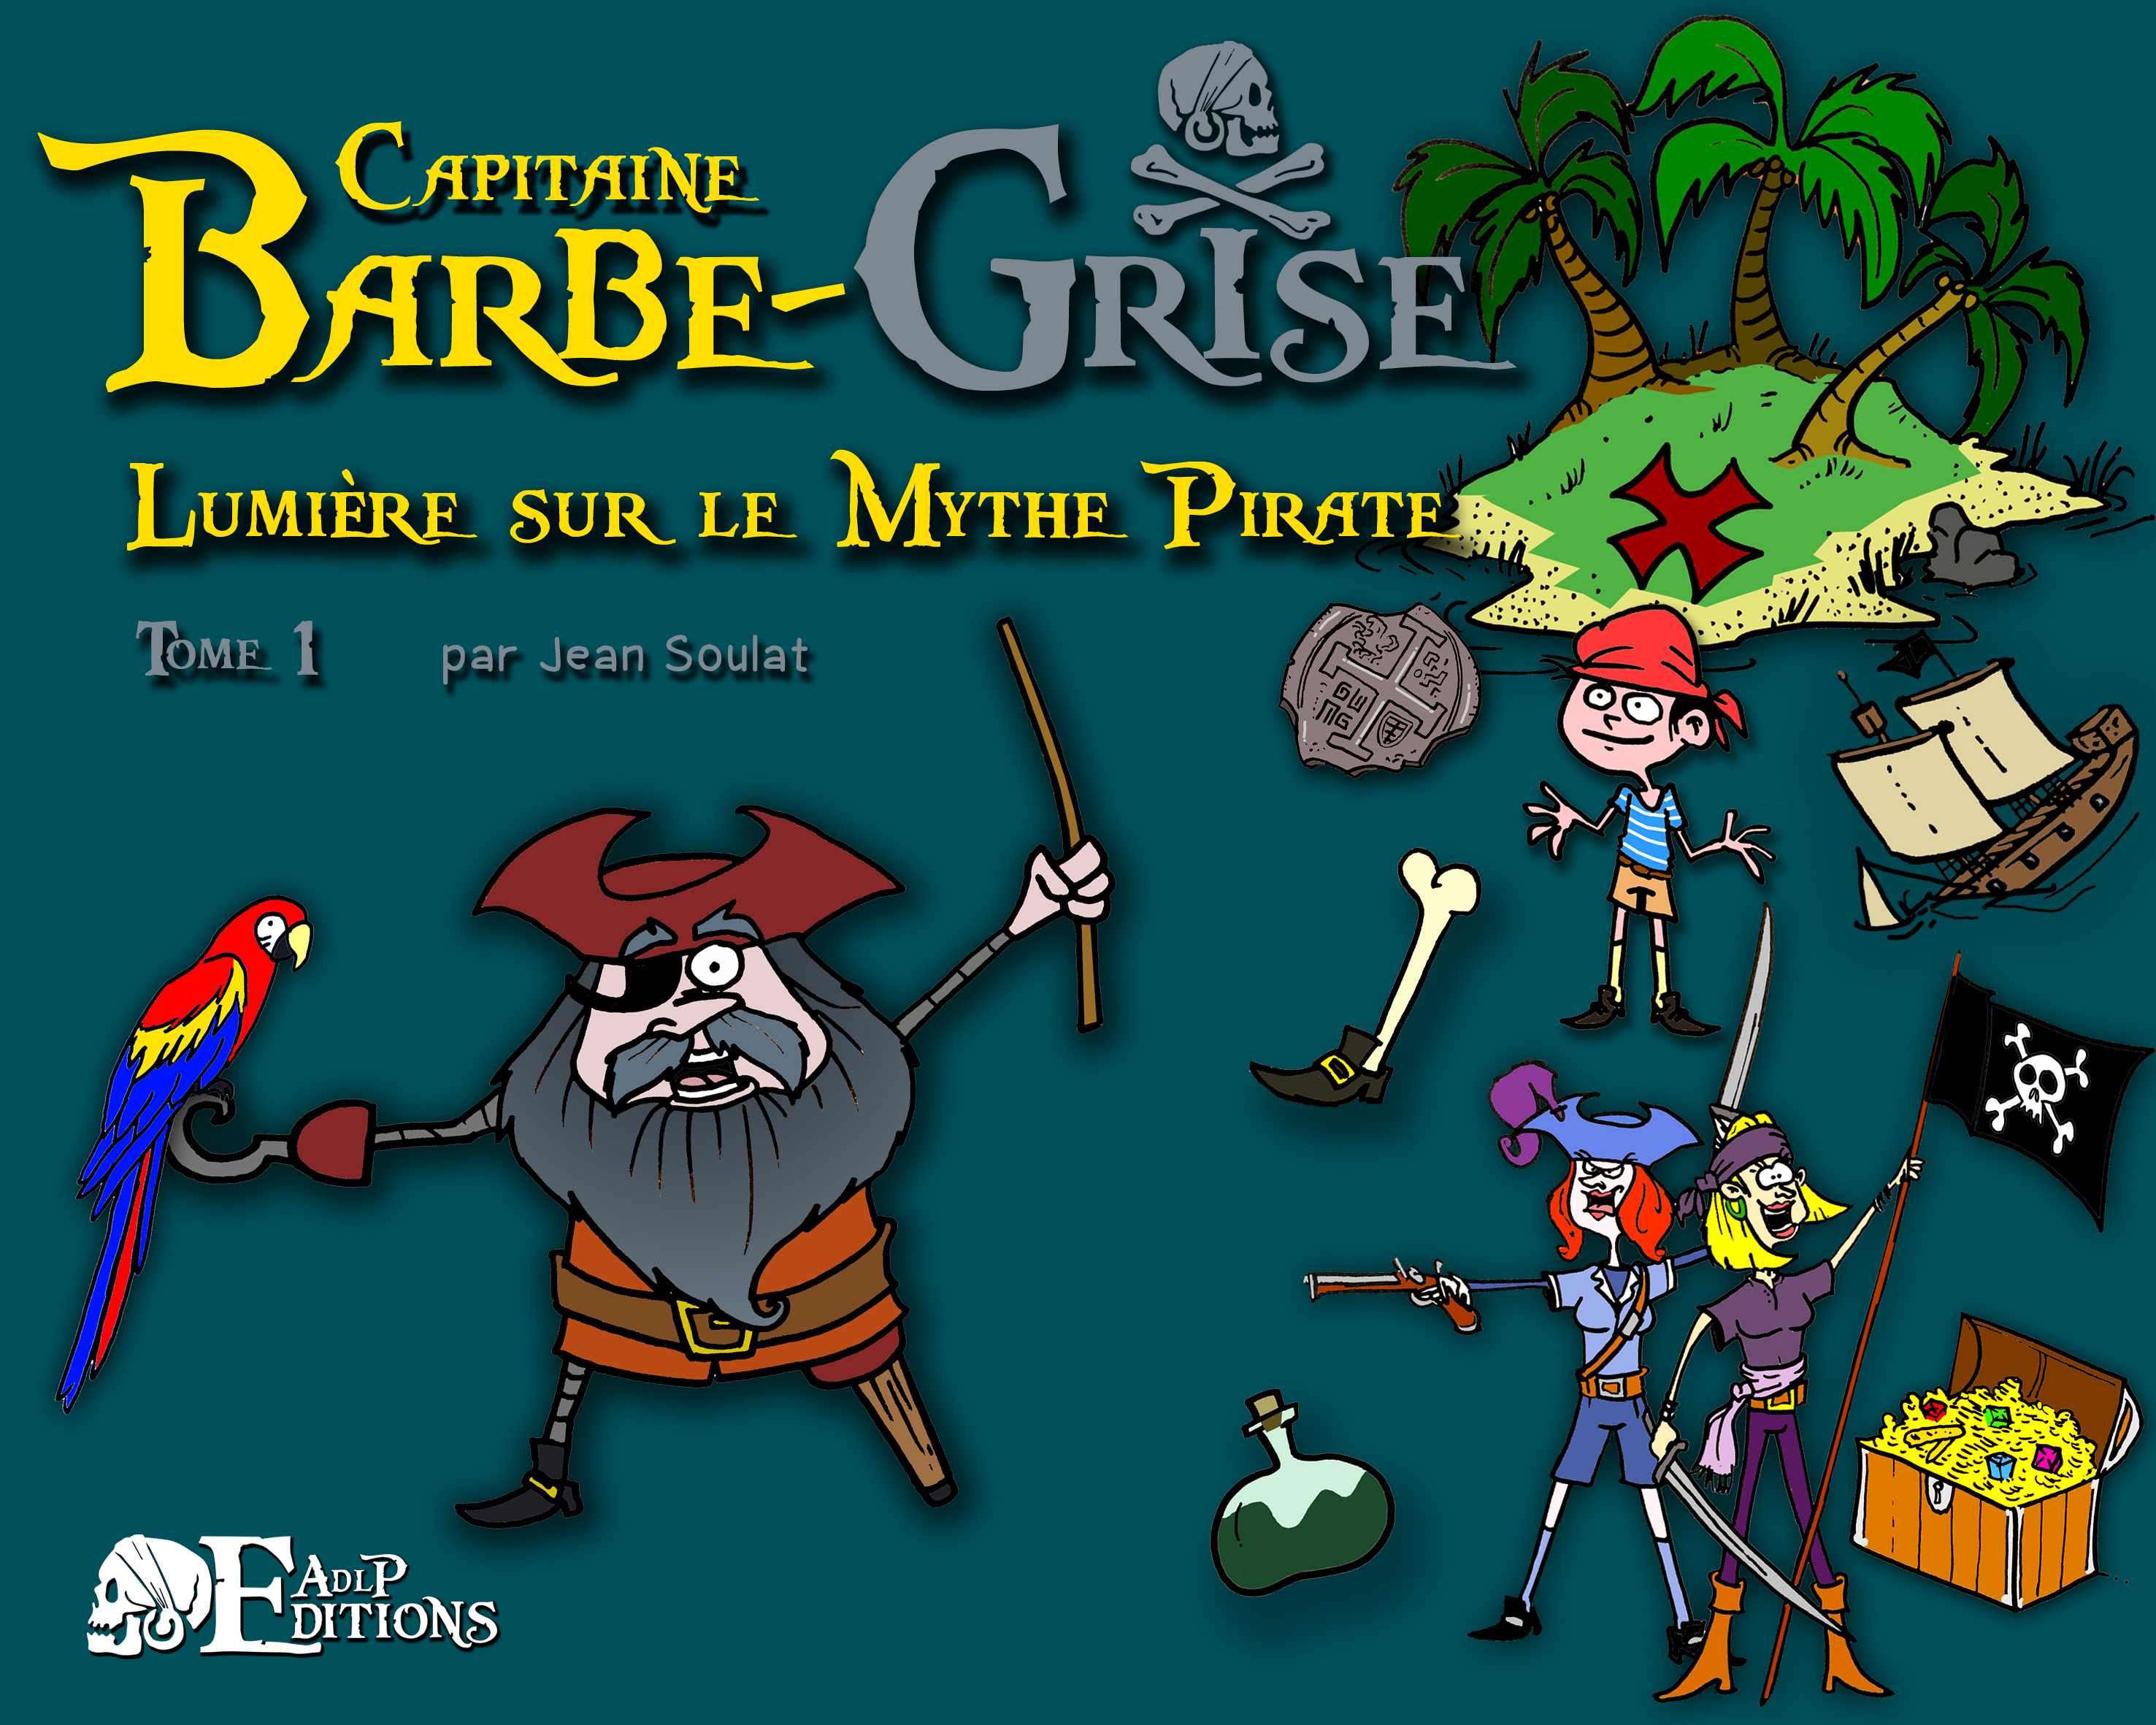 Capitaine Barbe-Grise. Lumière sur le Mythe Pirate, tome 1, 2022, 32 p. Livre jeunesse à partir de 7 ans